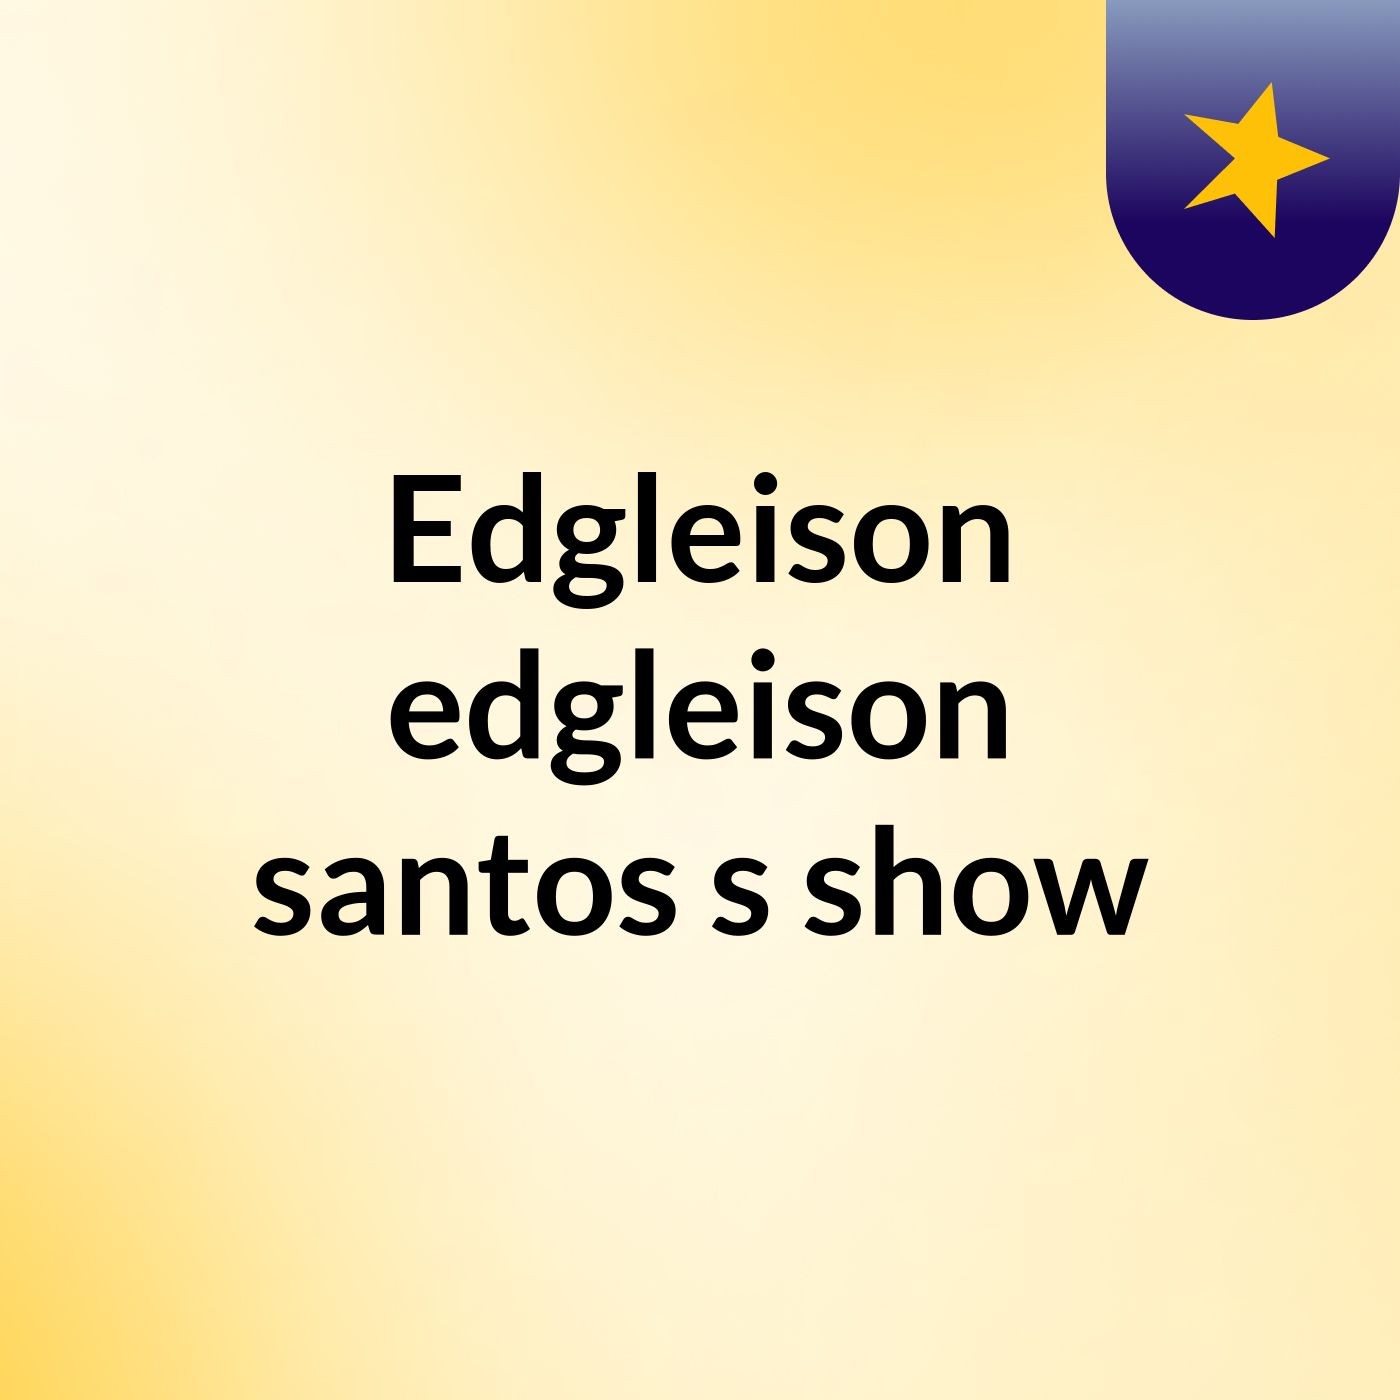 Edgleison edgleison santos's show